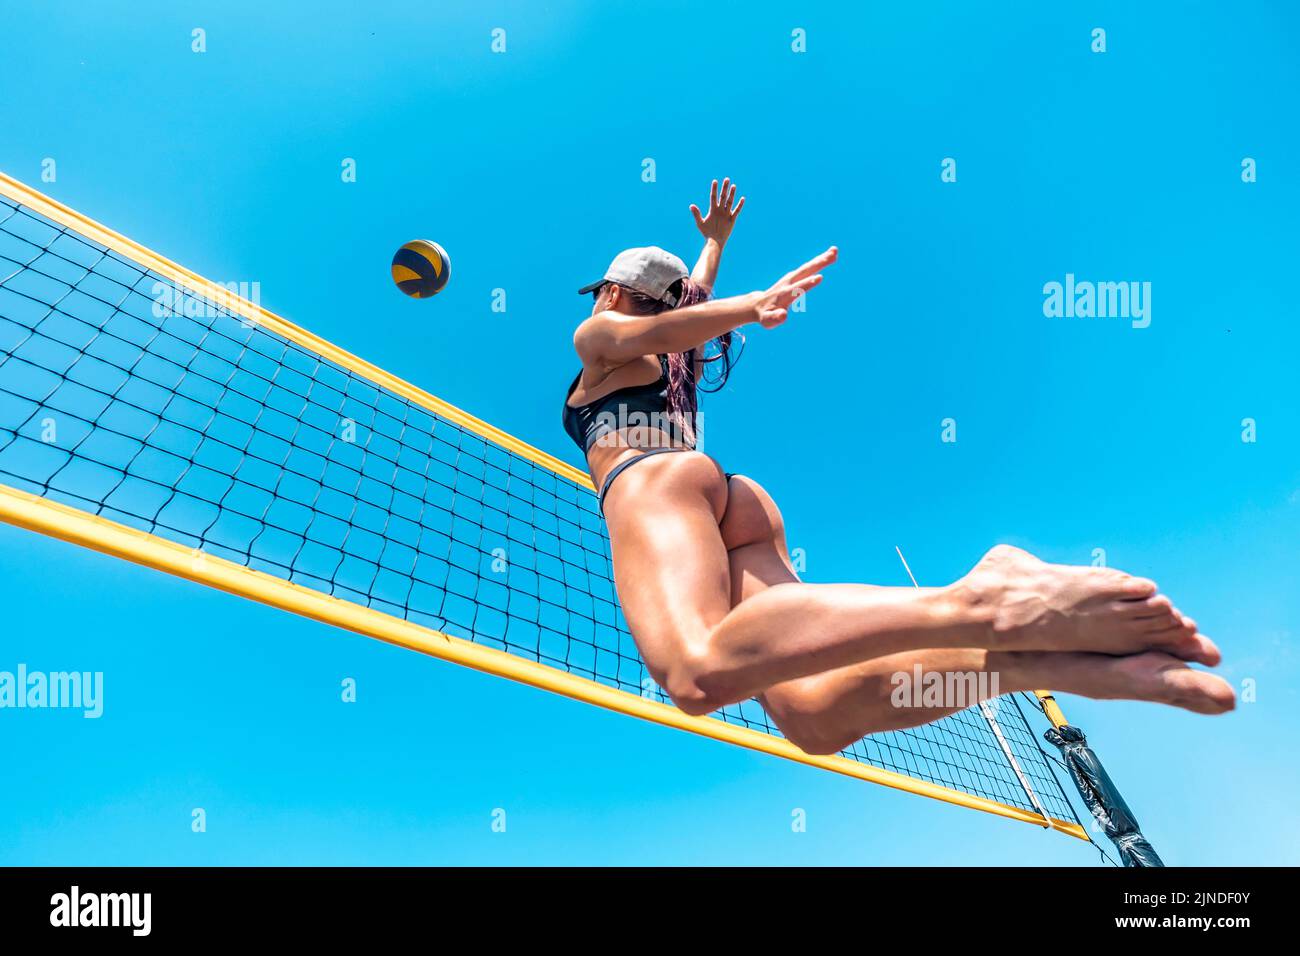 Mujer joven jugador de voleibol de playa. Saltar de deportes joven mujer jugando al voleibol en la playa del mar contra el cielo azul. Concepto de un estilo de vida saludable Foto de stock